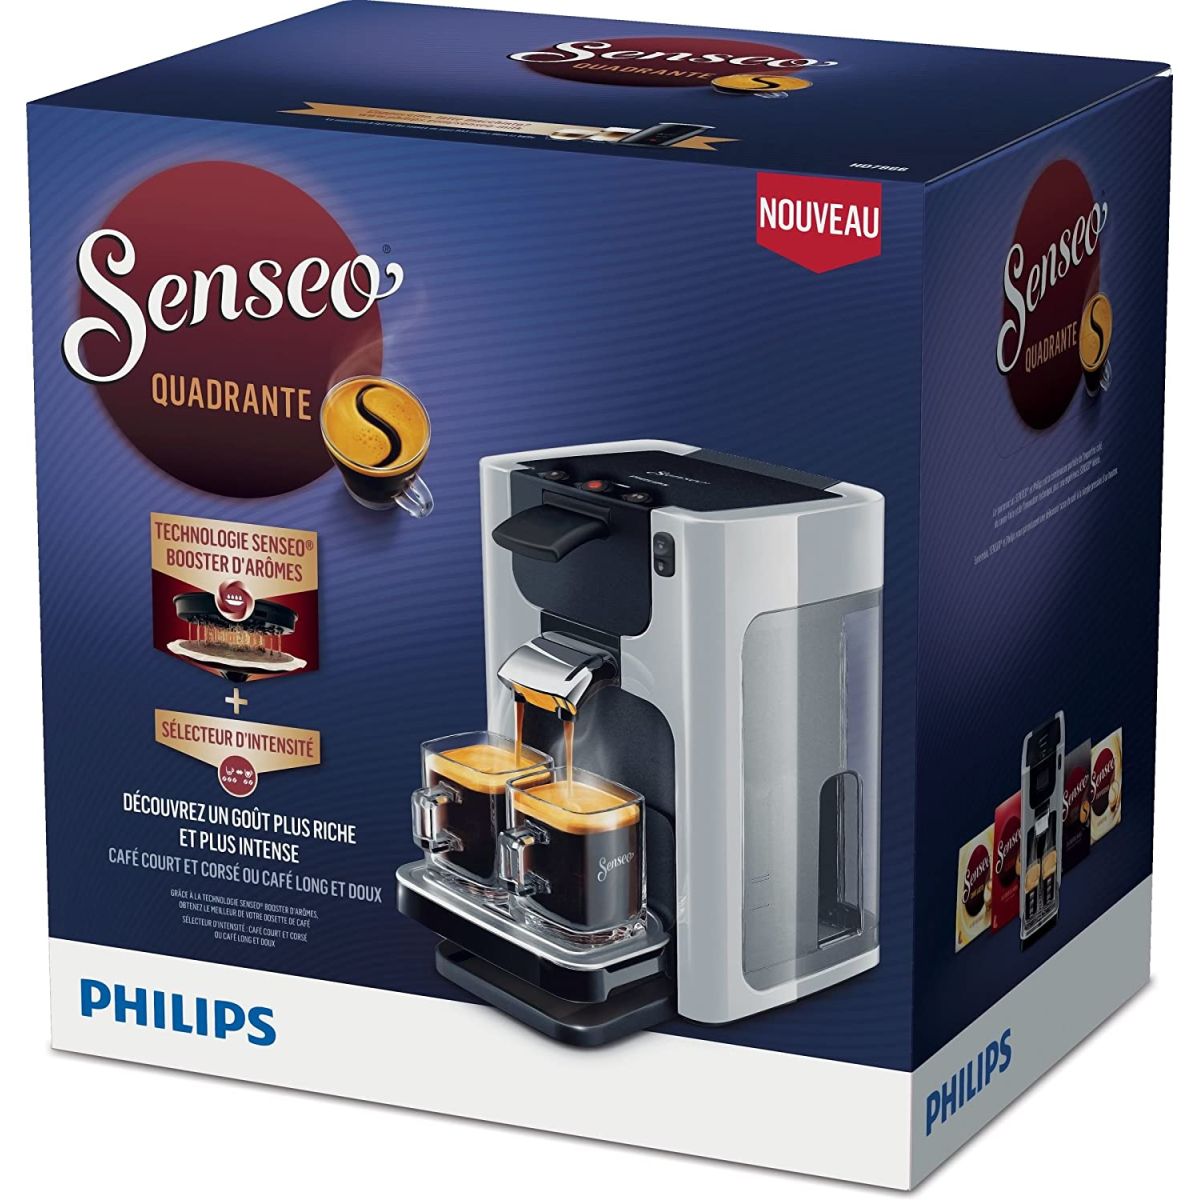 Nouvelle promotion sur cette machine à café Philips Senseo au top